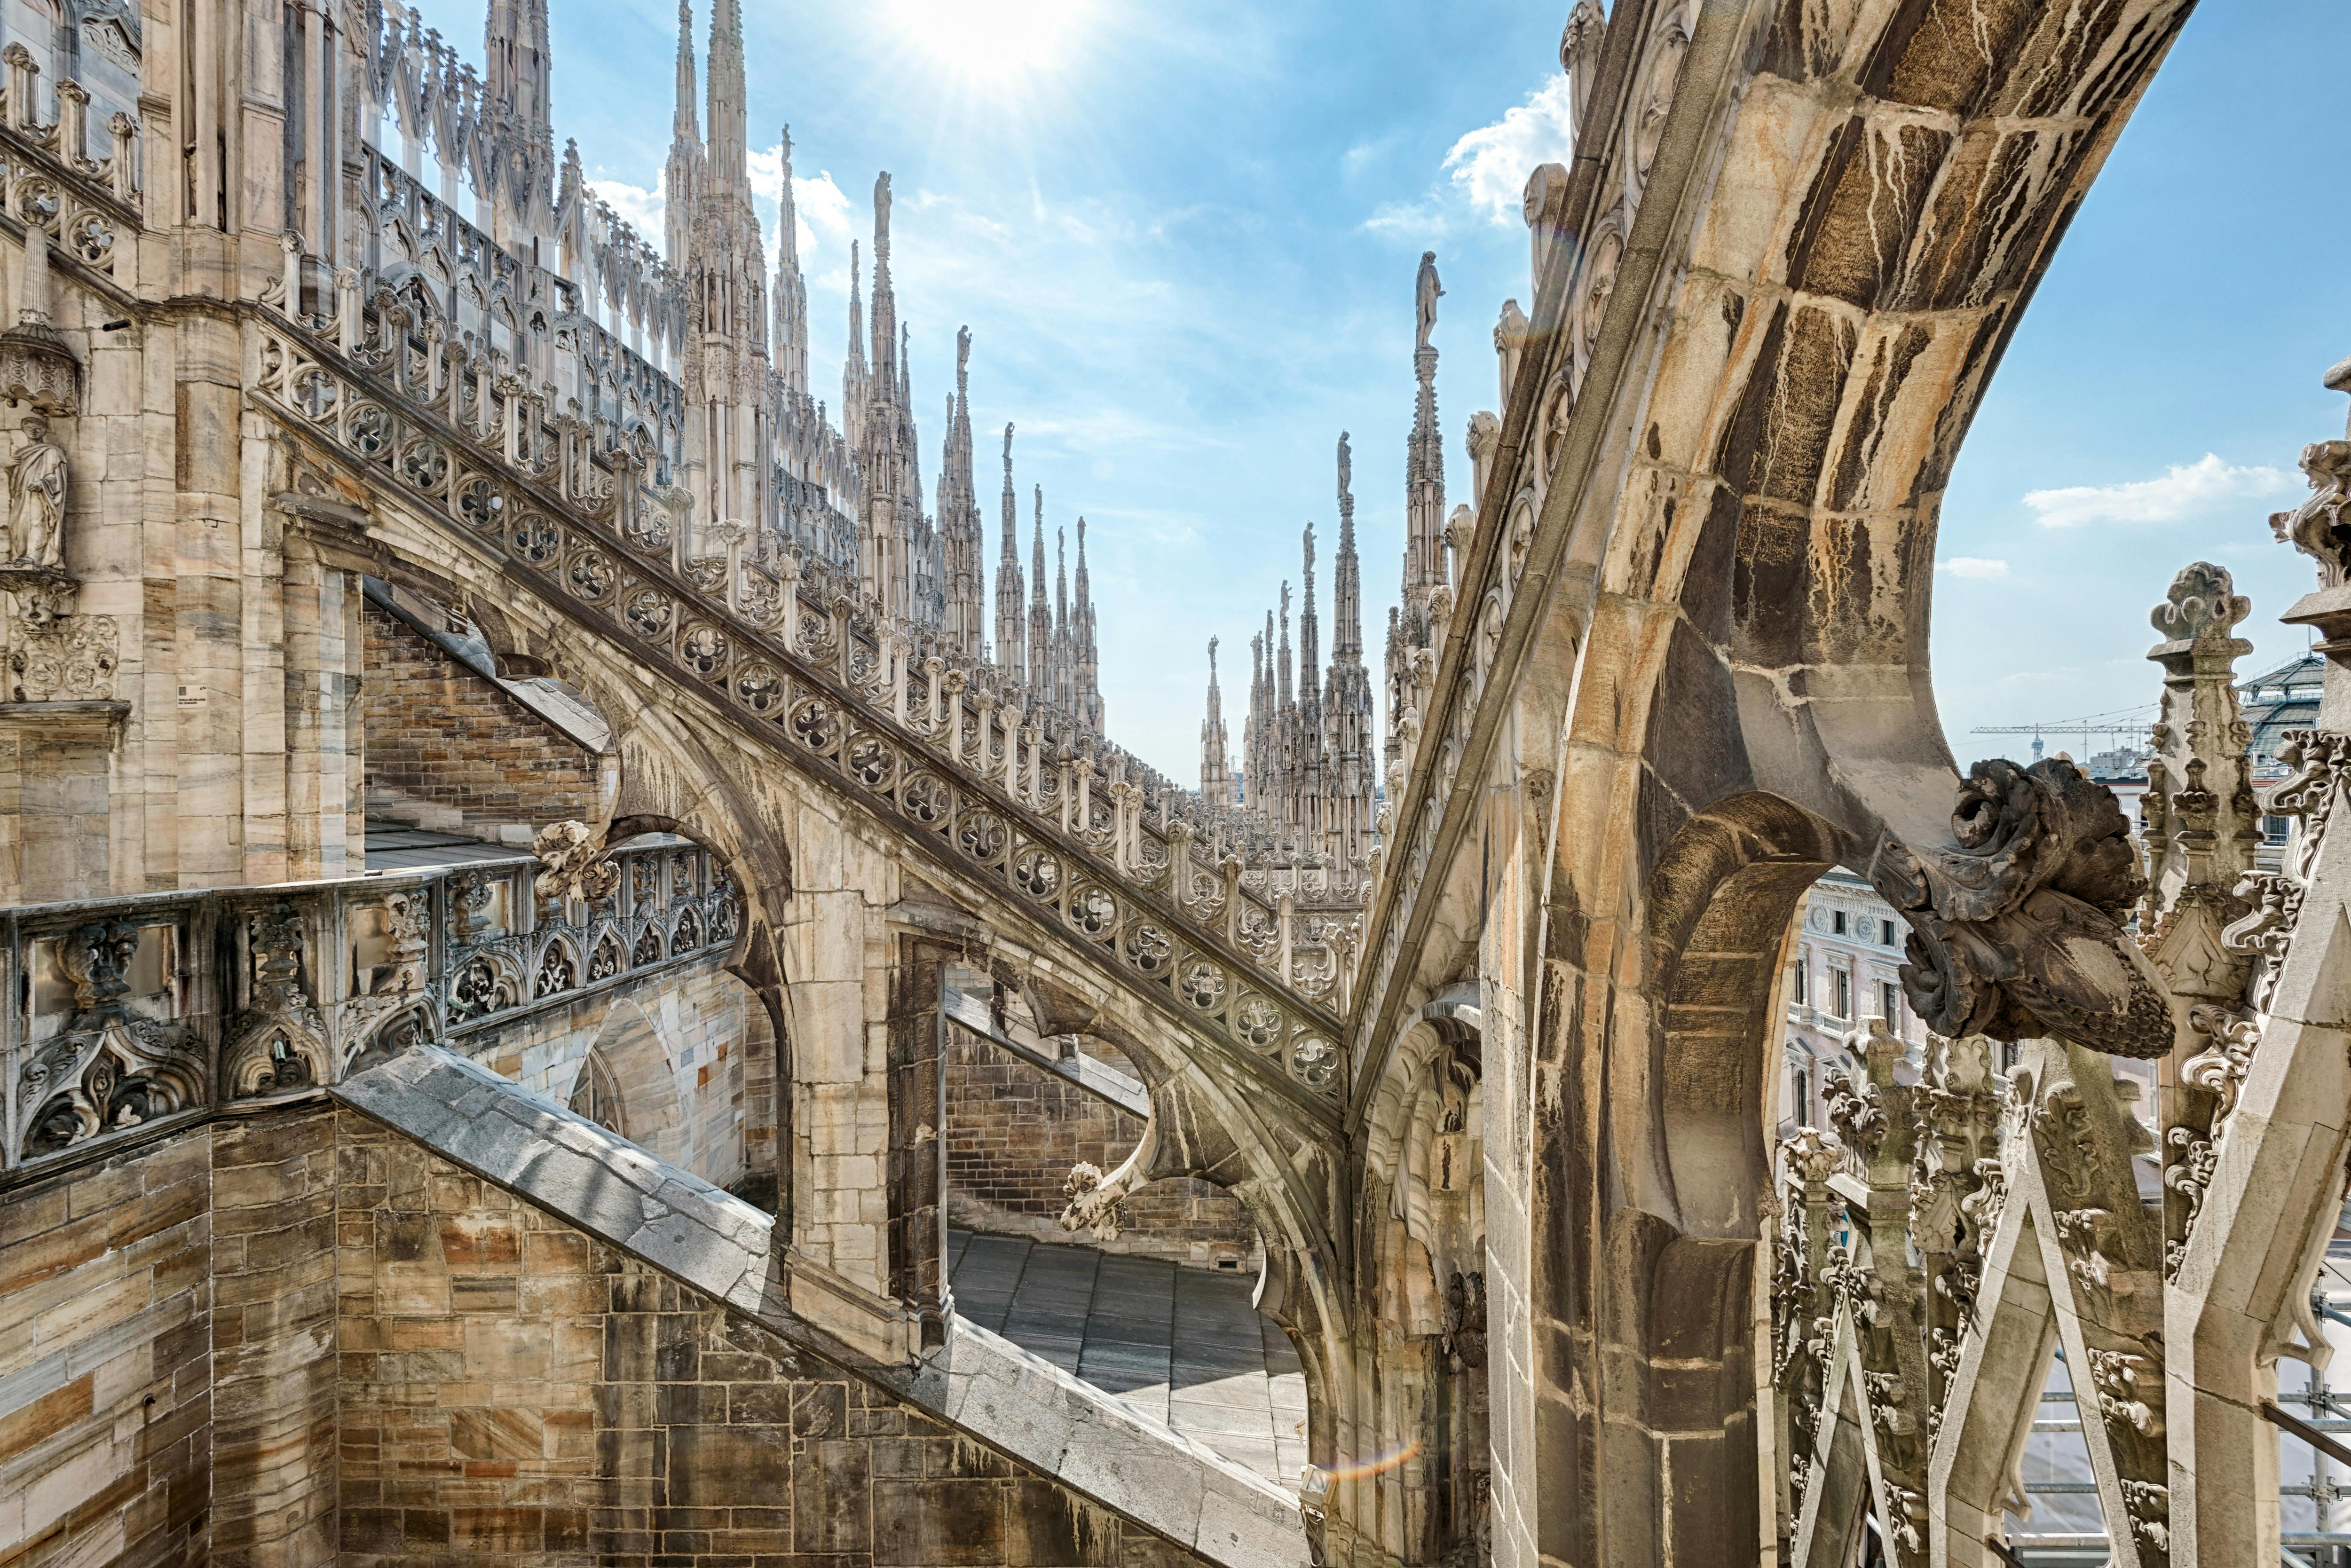 Visite coupe-file du toit du Duomo de Milan